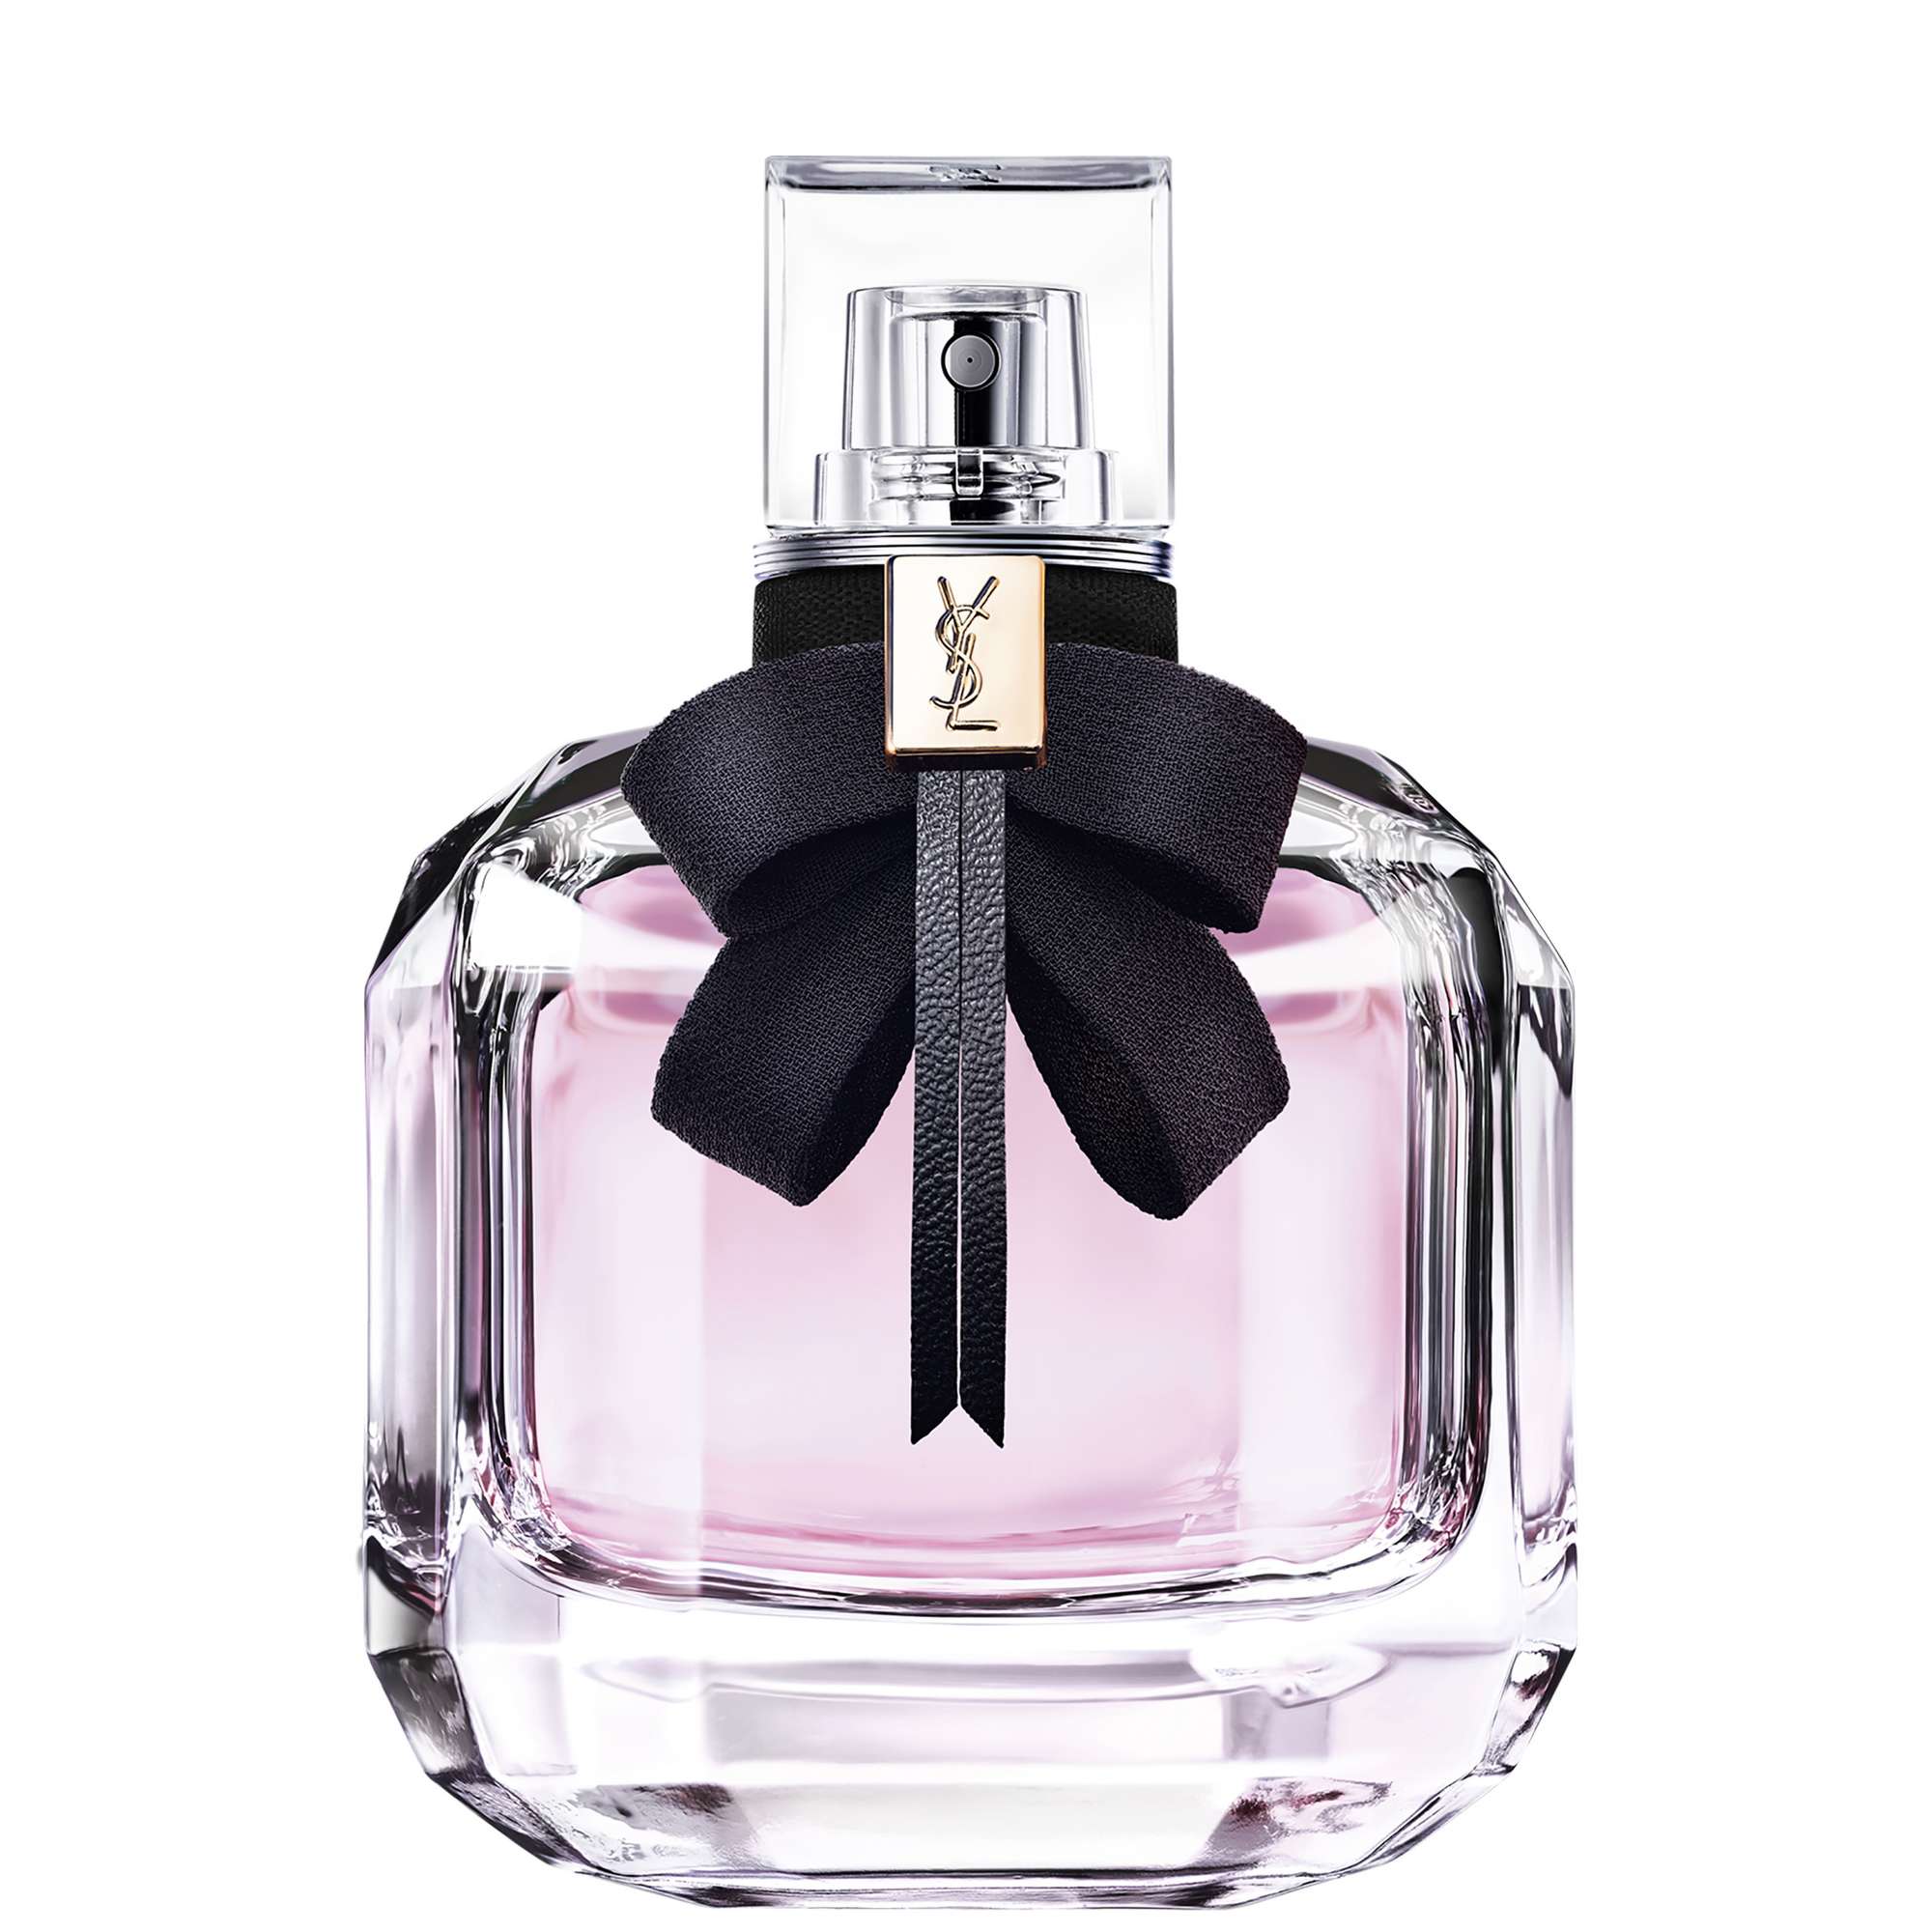 Photos - Women's Fragrance Yves Saint Laurent Mon Paris Eau de Parfum Spray 90ml 